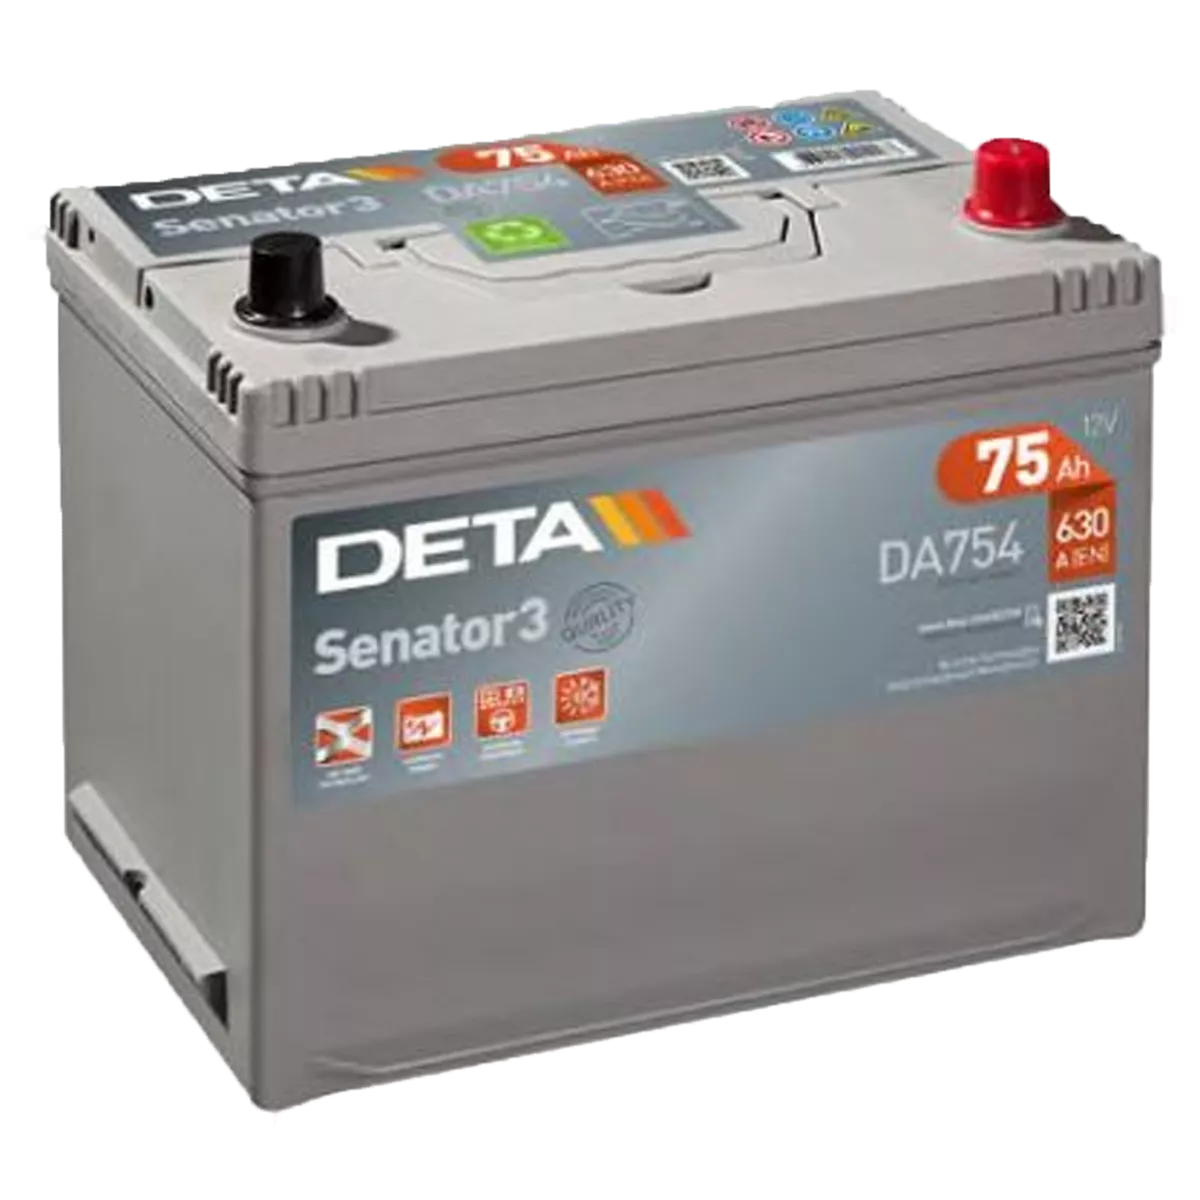 Автомобильный аккумулятор DETA 6CT-75Аh АзЕ ASIA Senator 3 (DA754)